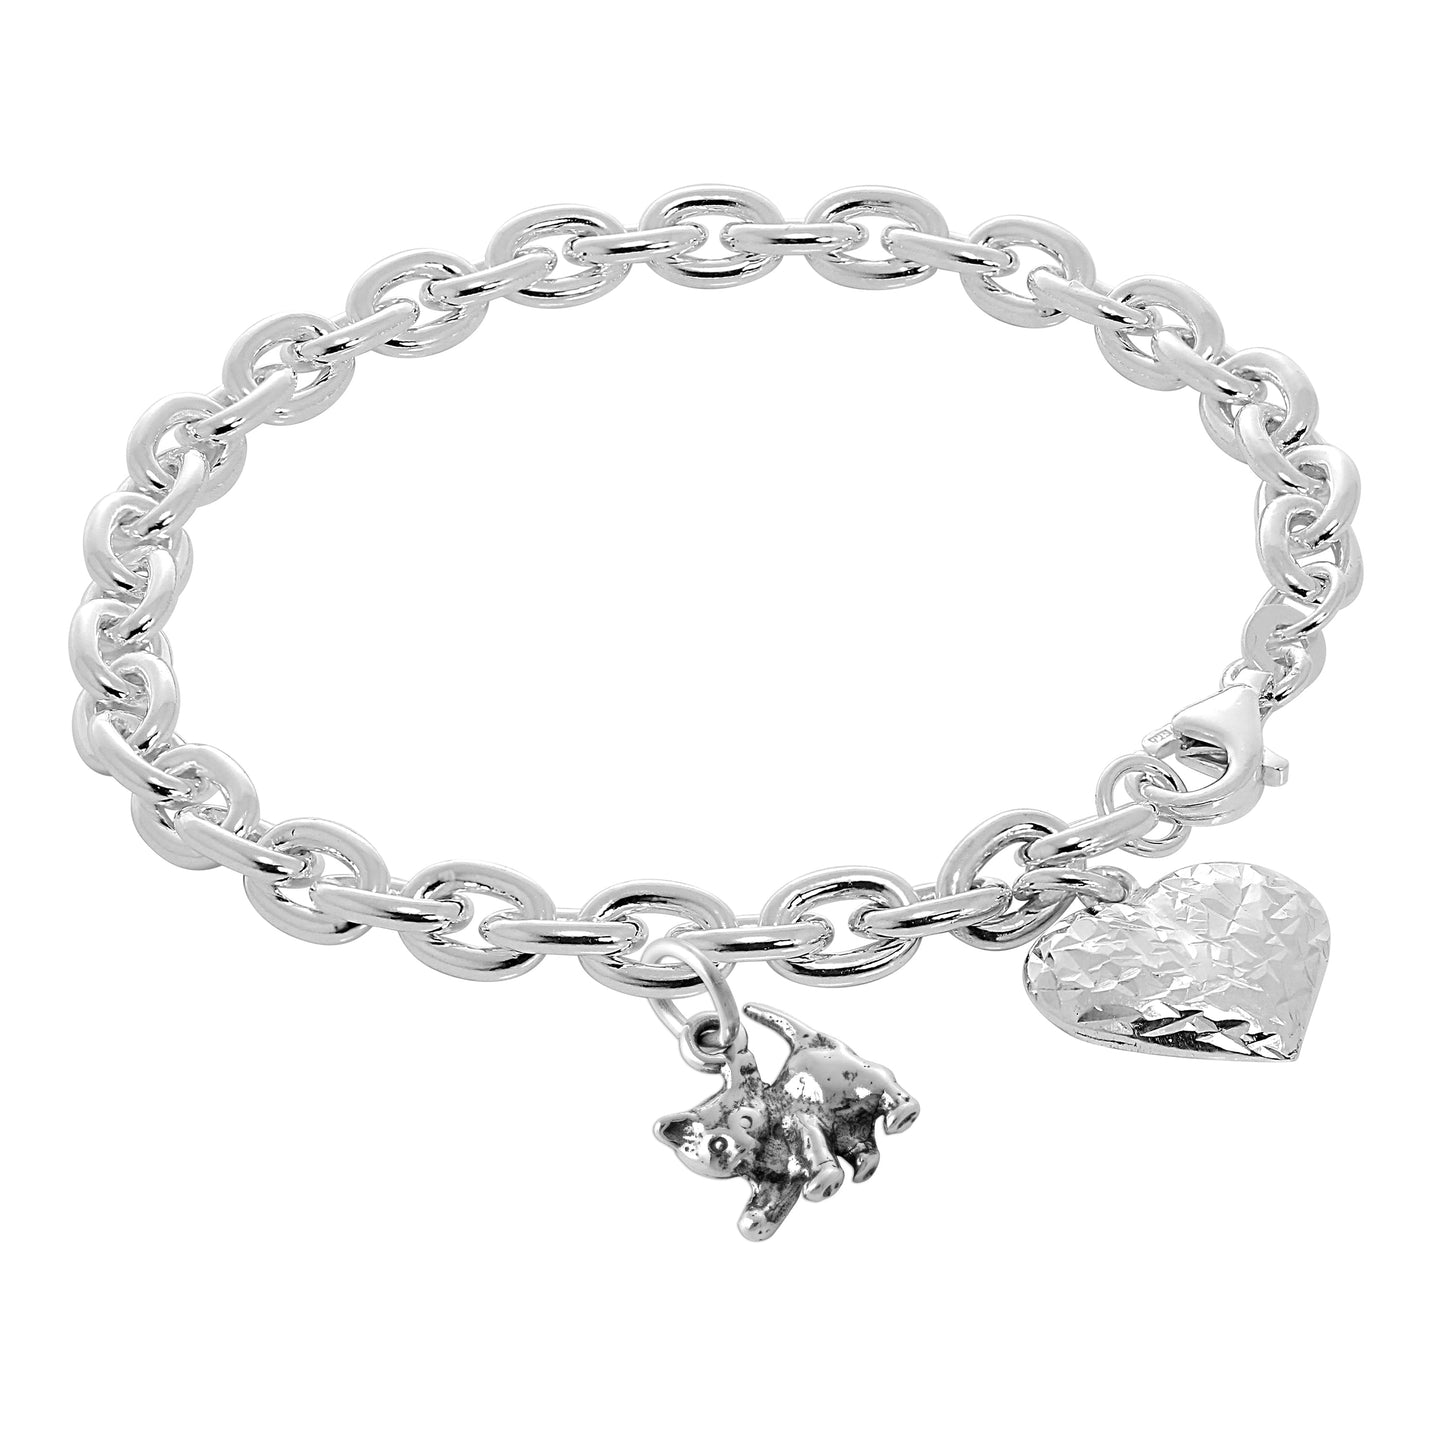 Sterling Silver Cat & Puffed Heart 7 Inch Starter Bracelet